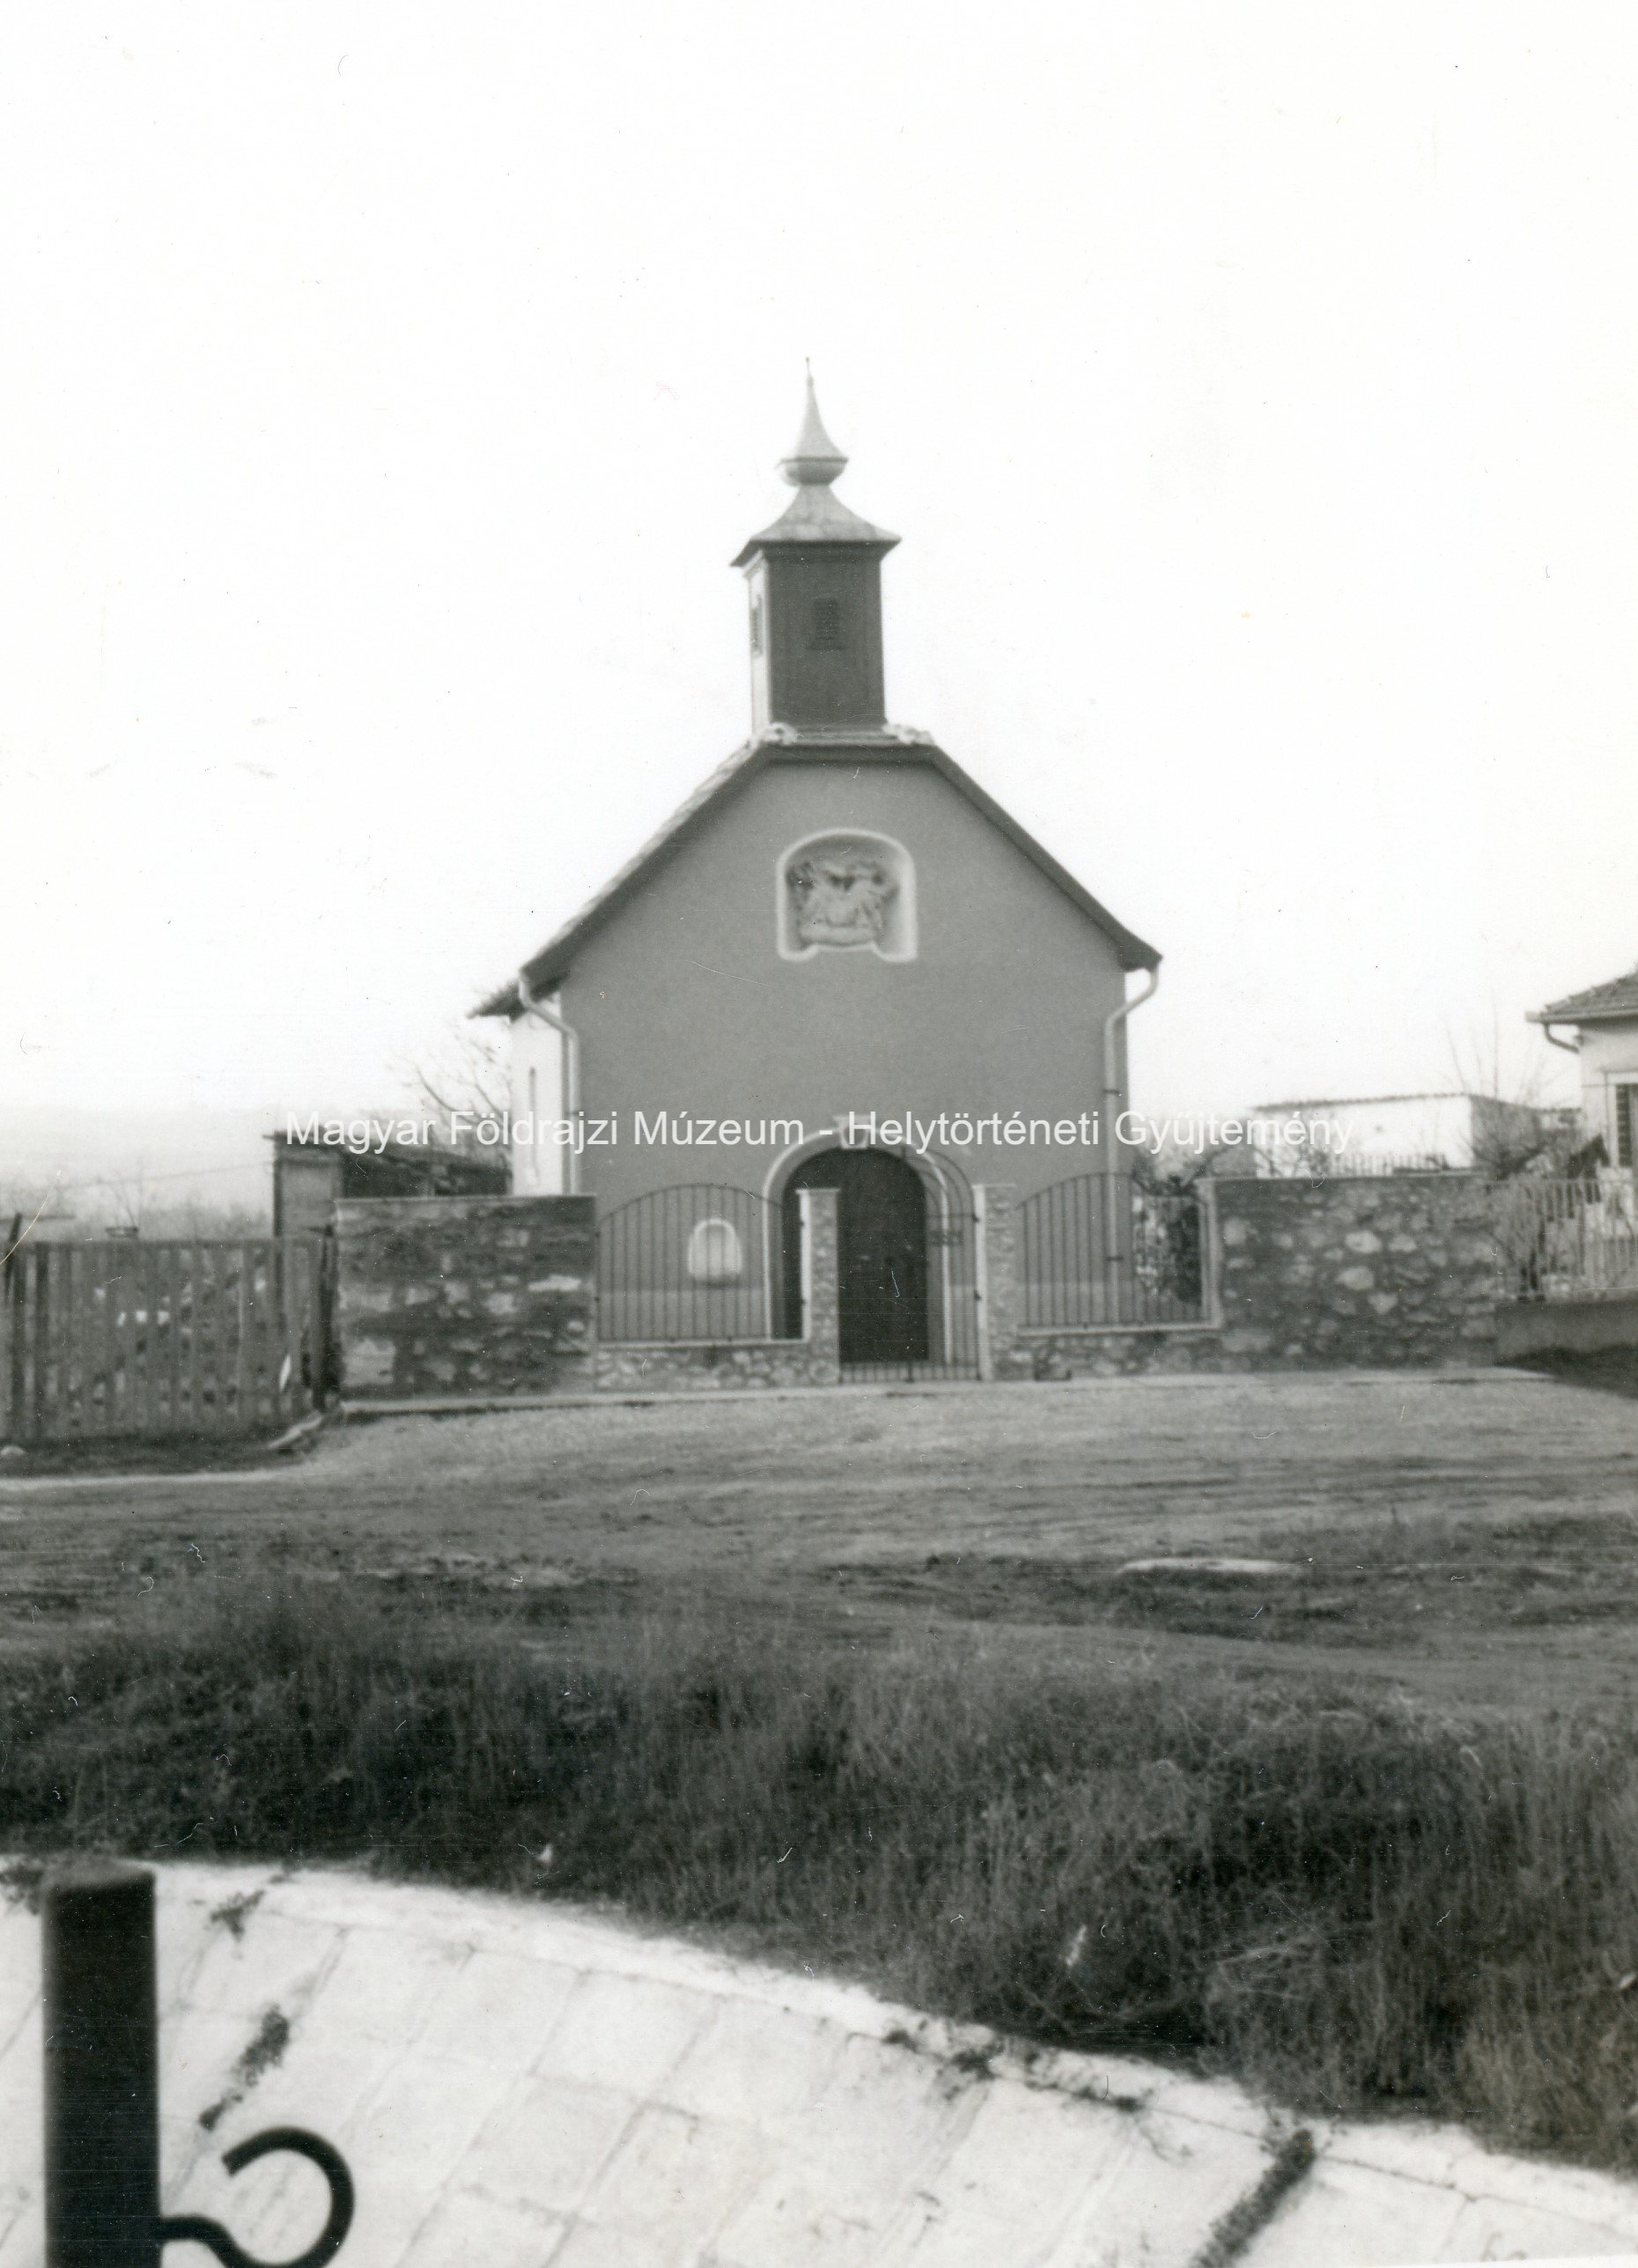 Szent Sebestyén kápolna (Magyar Földrajzi Múzeum CC BY-NC-SA)